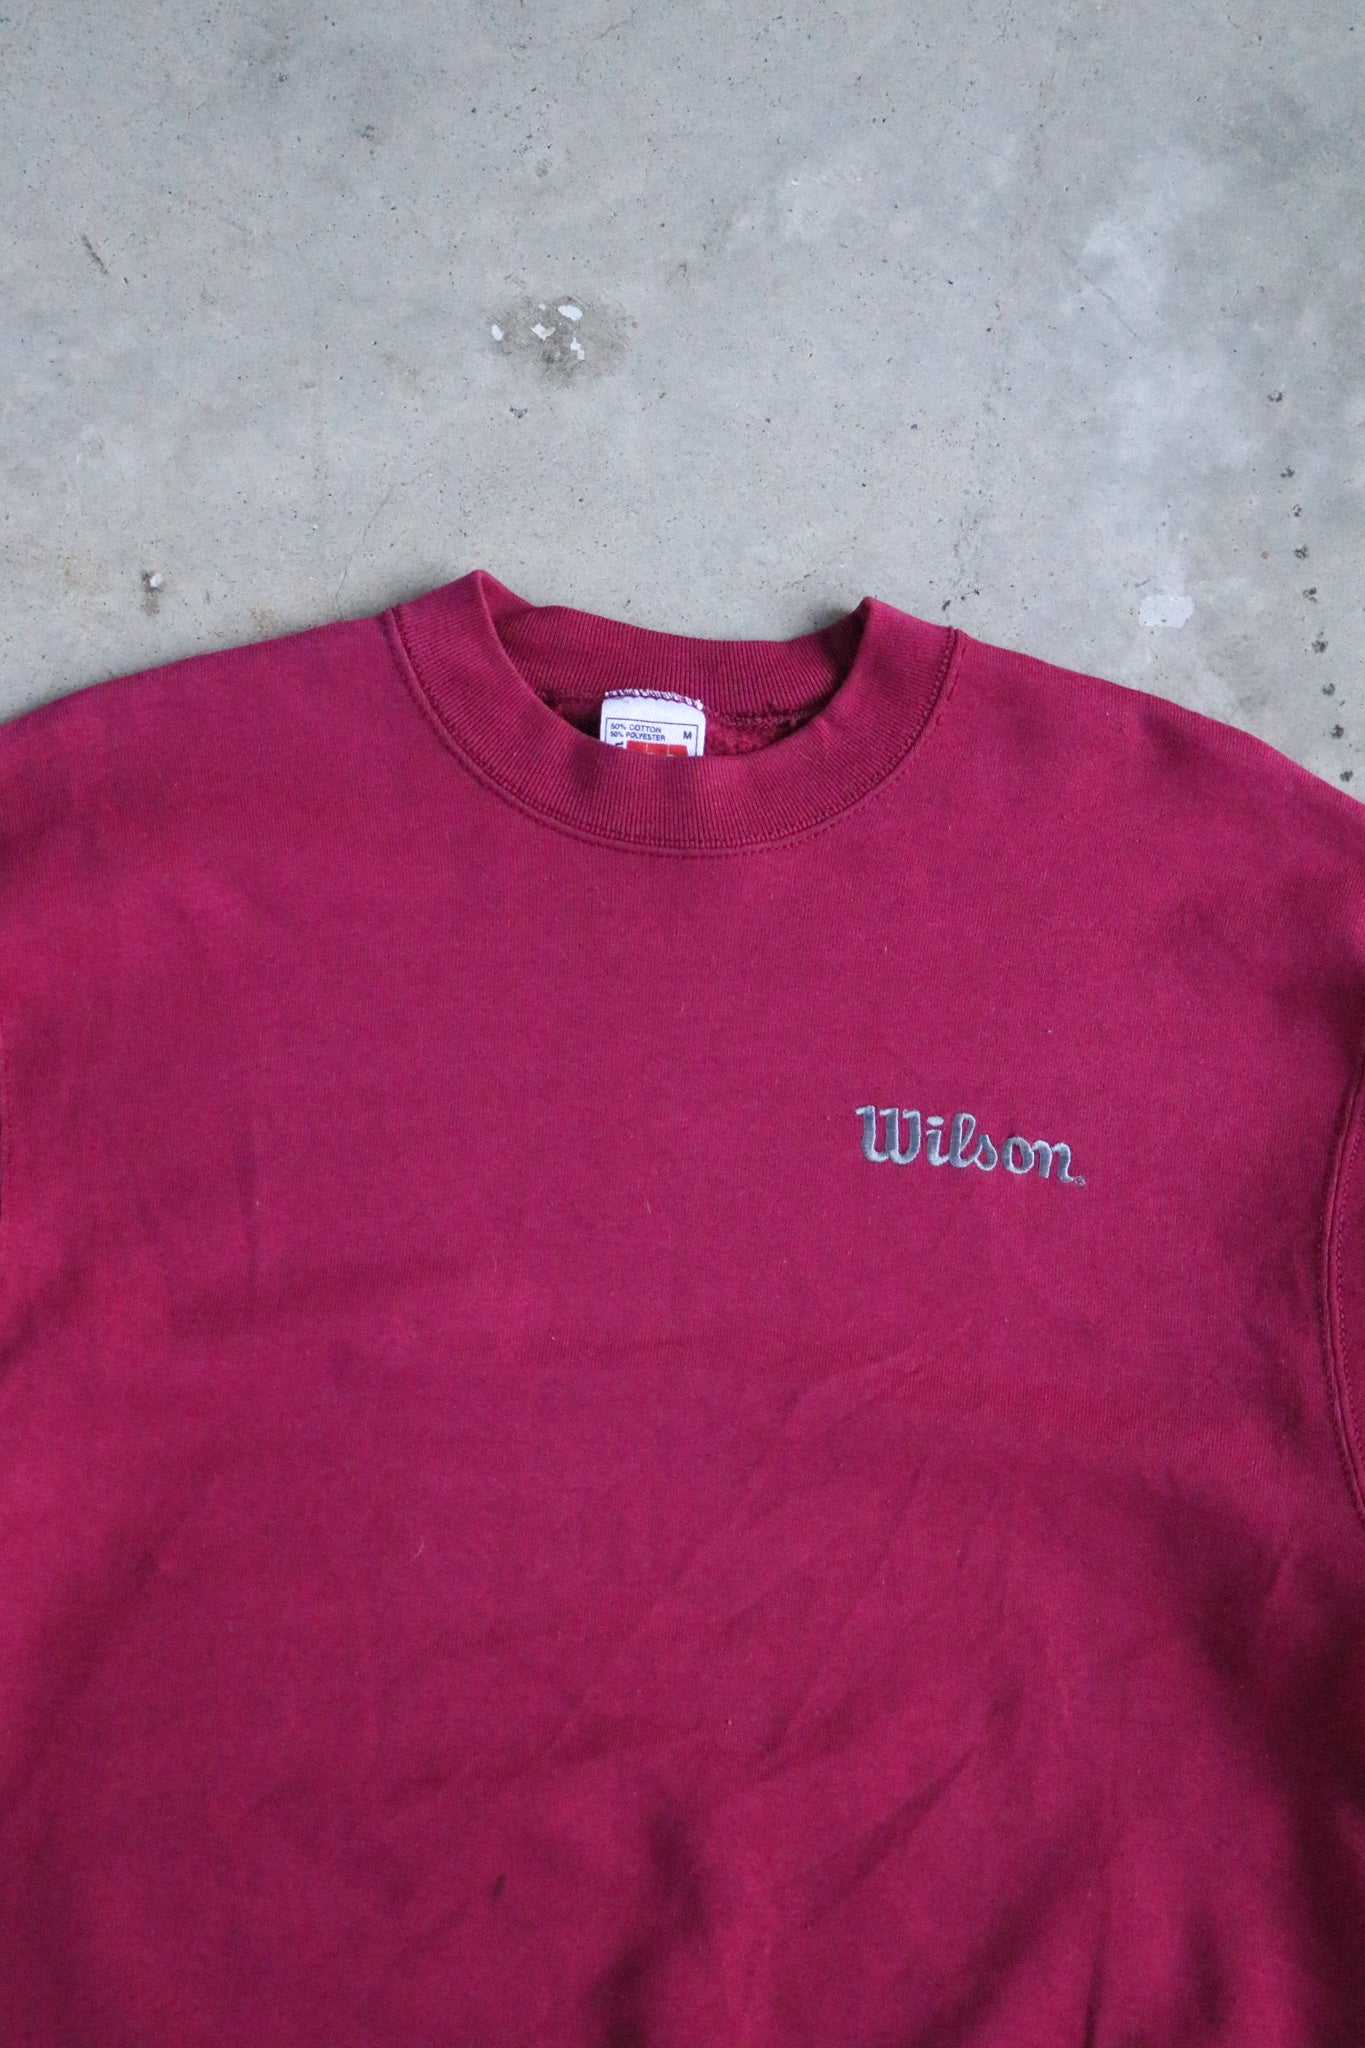 Vintage Wilson Sweater Medium